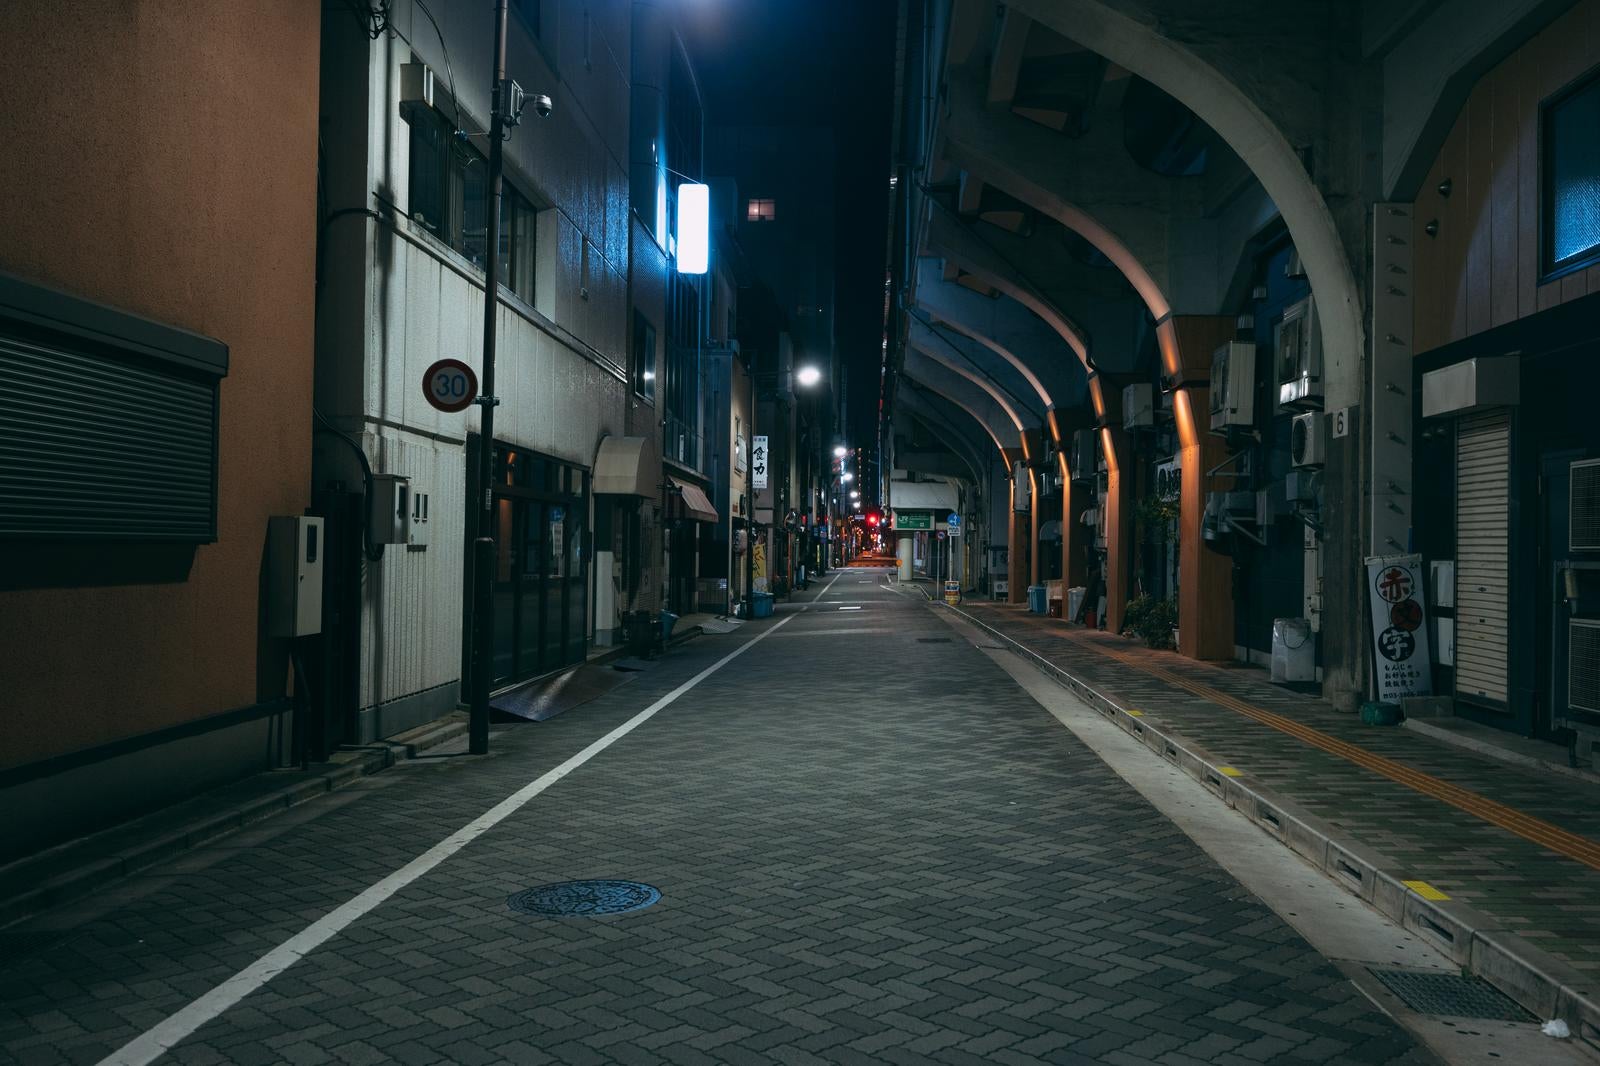 「深夜の浅草橋高架下」の写真